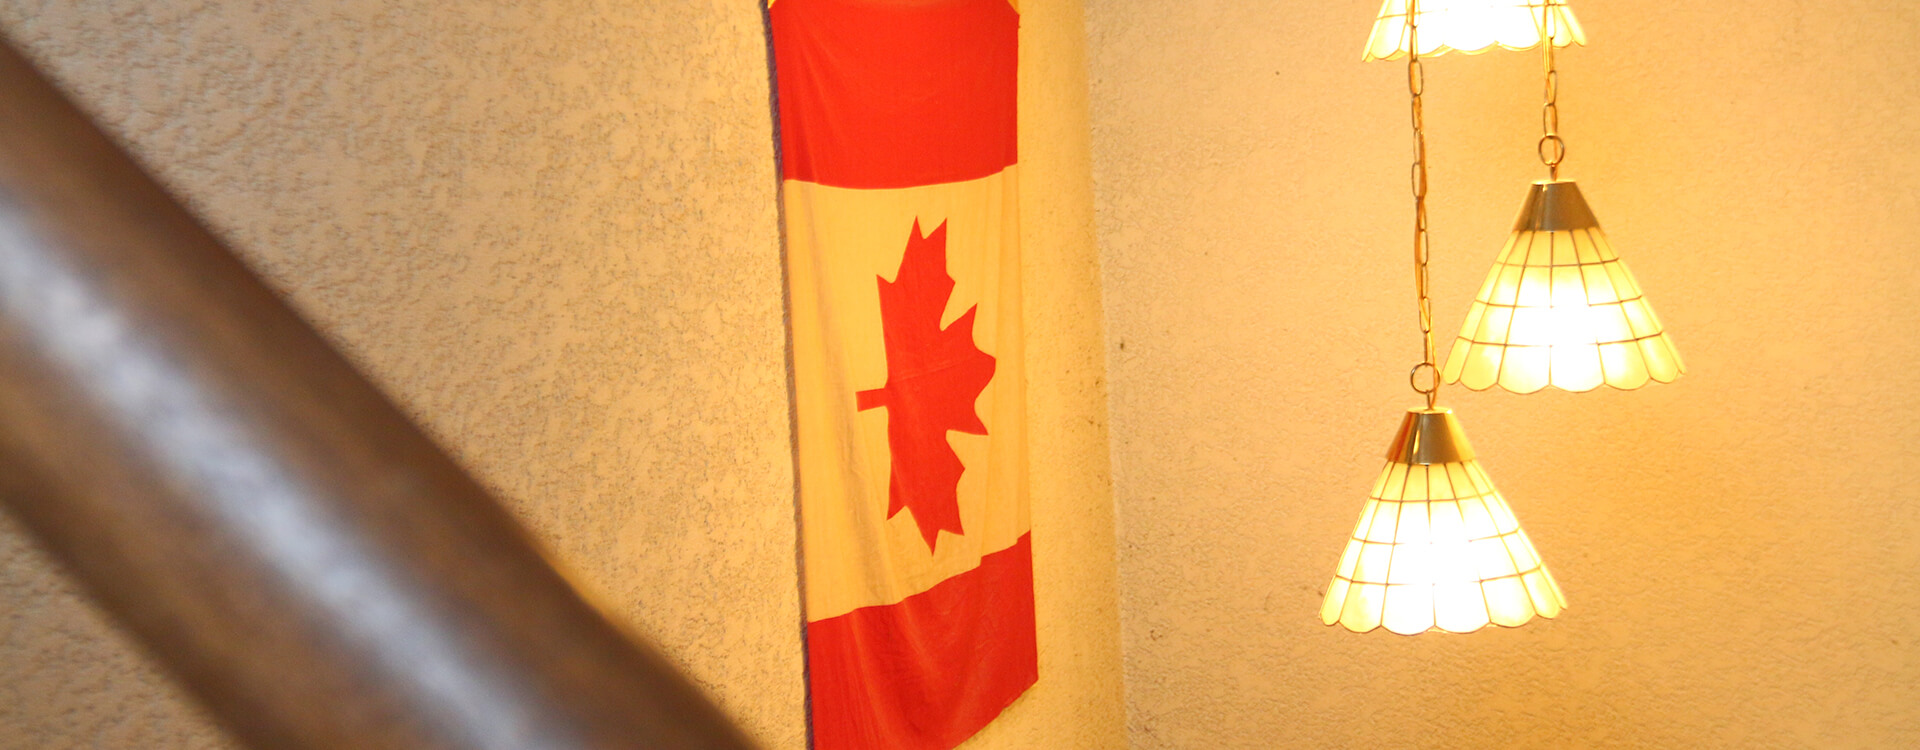 館内 カナダ国旗